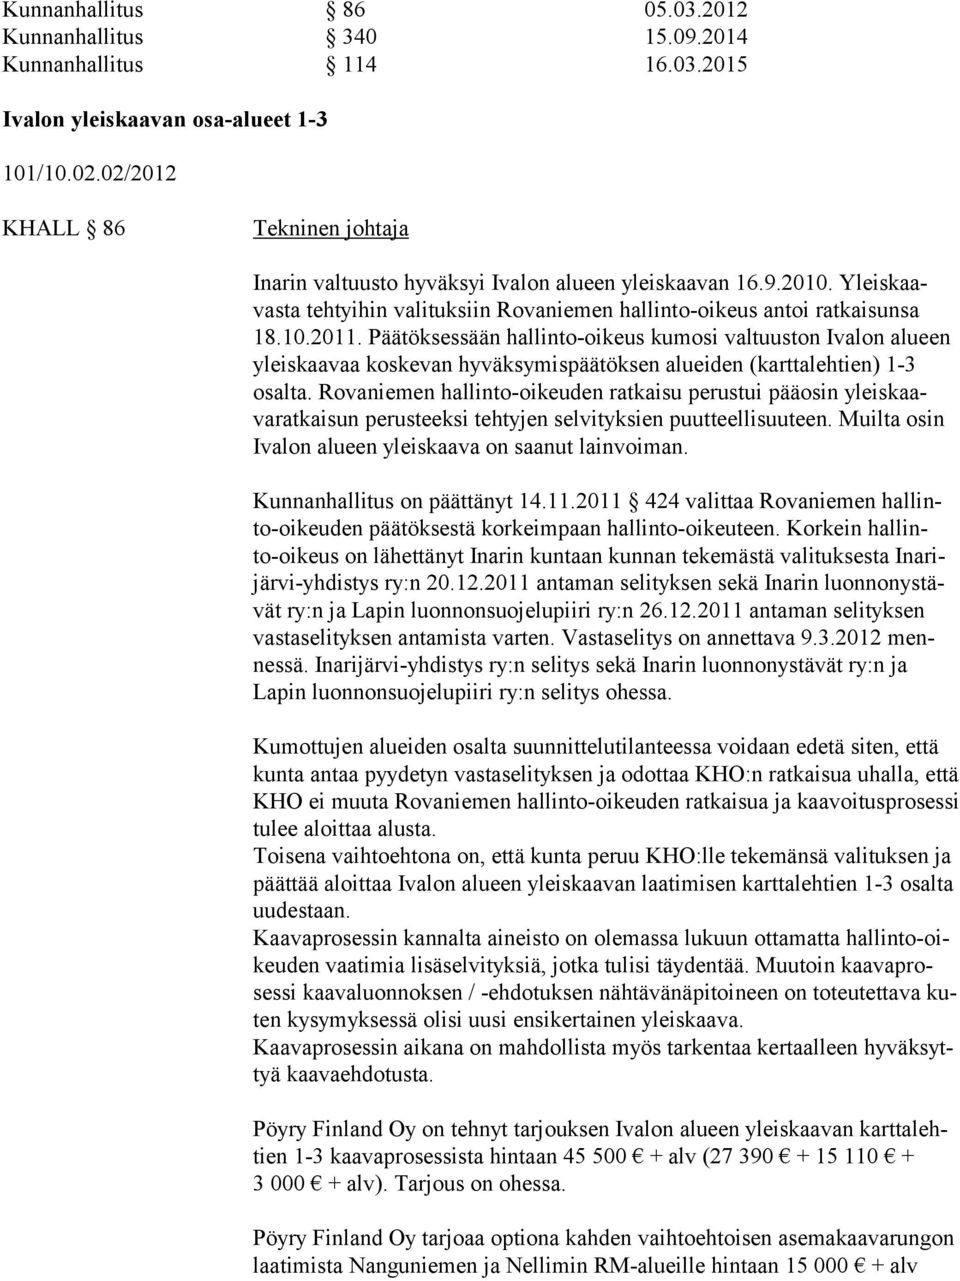 Päätöksessään hallinto-oikeus kumosi valtuuston Ivalon alueen yleiskaavaa koskevan hyväksymispäätöksen alueiden (karttalehtien) 1-3 osalta.